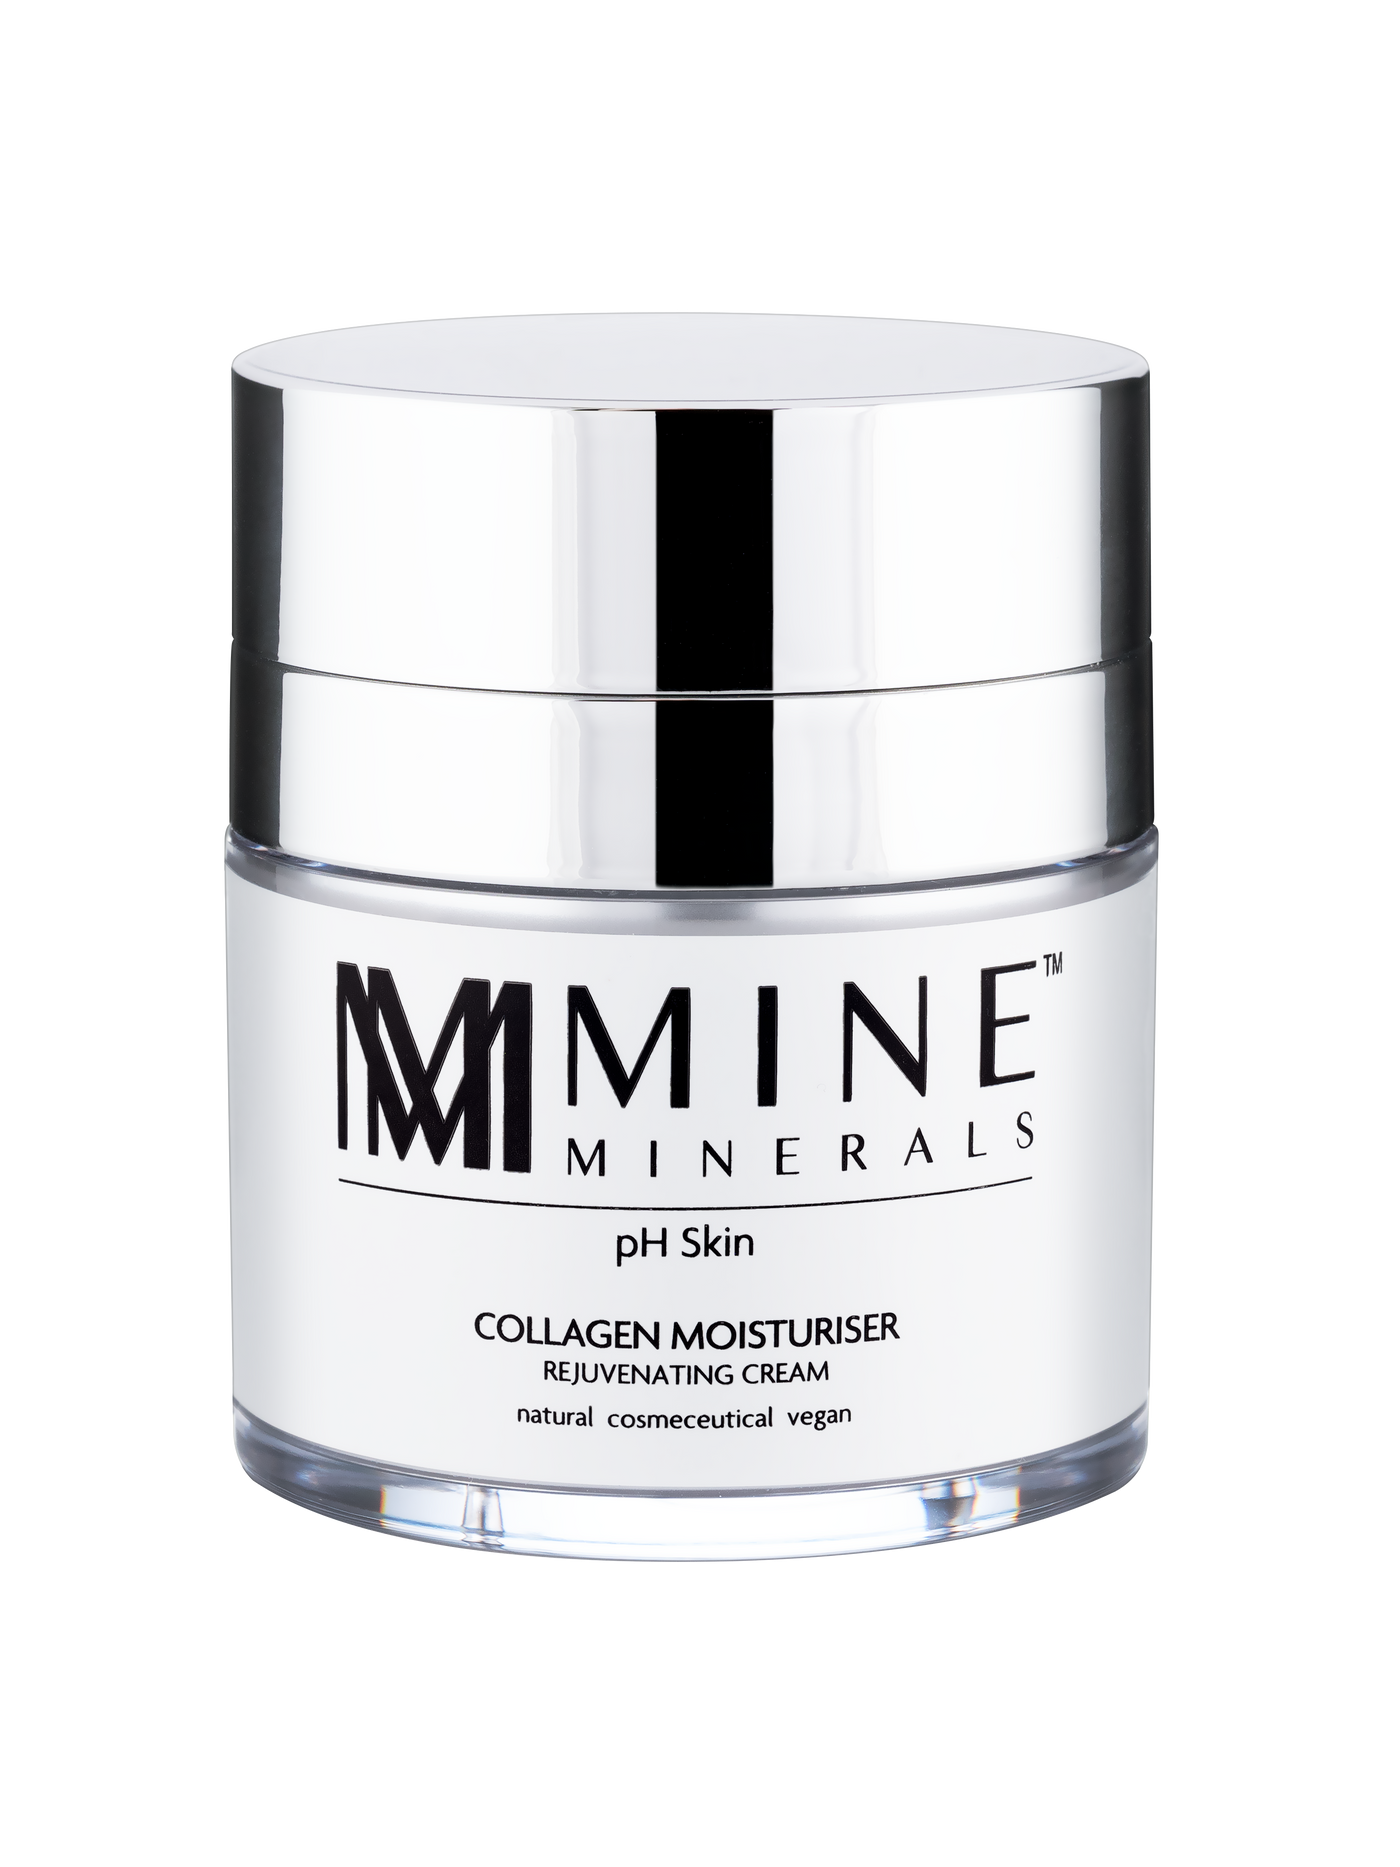 Collagen Moisturiser - 50ml - Mine Minerals